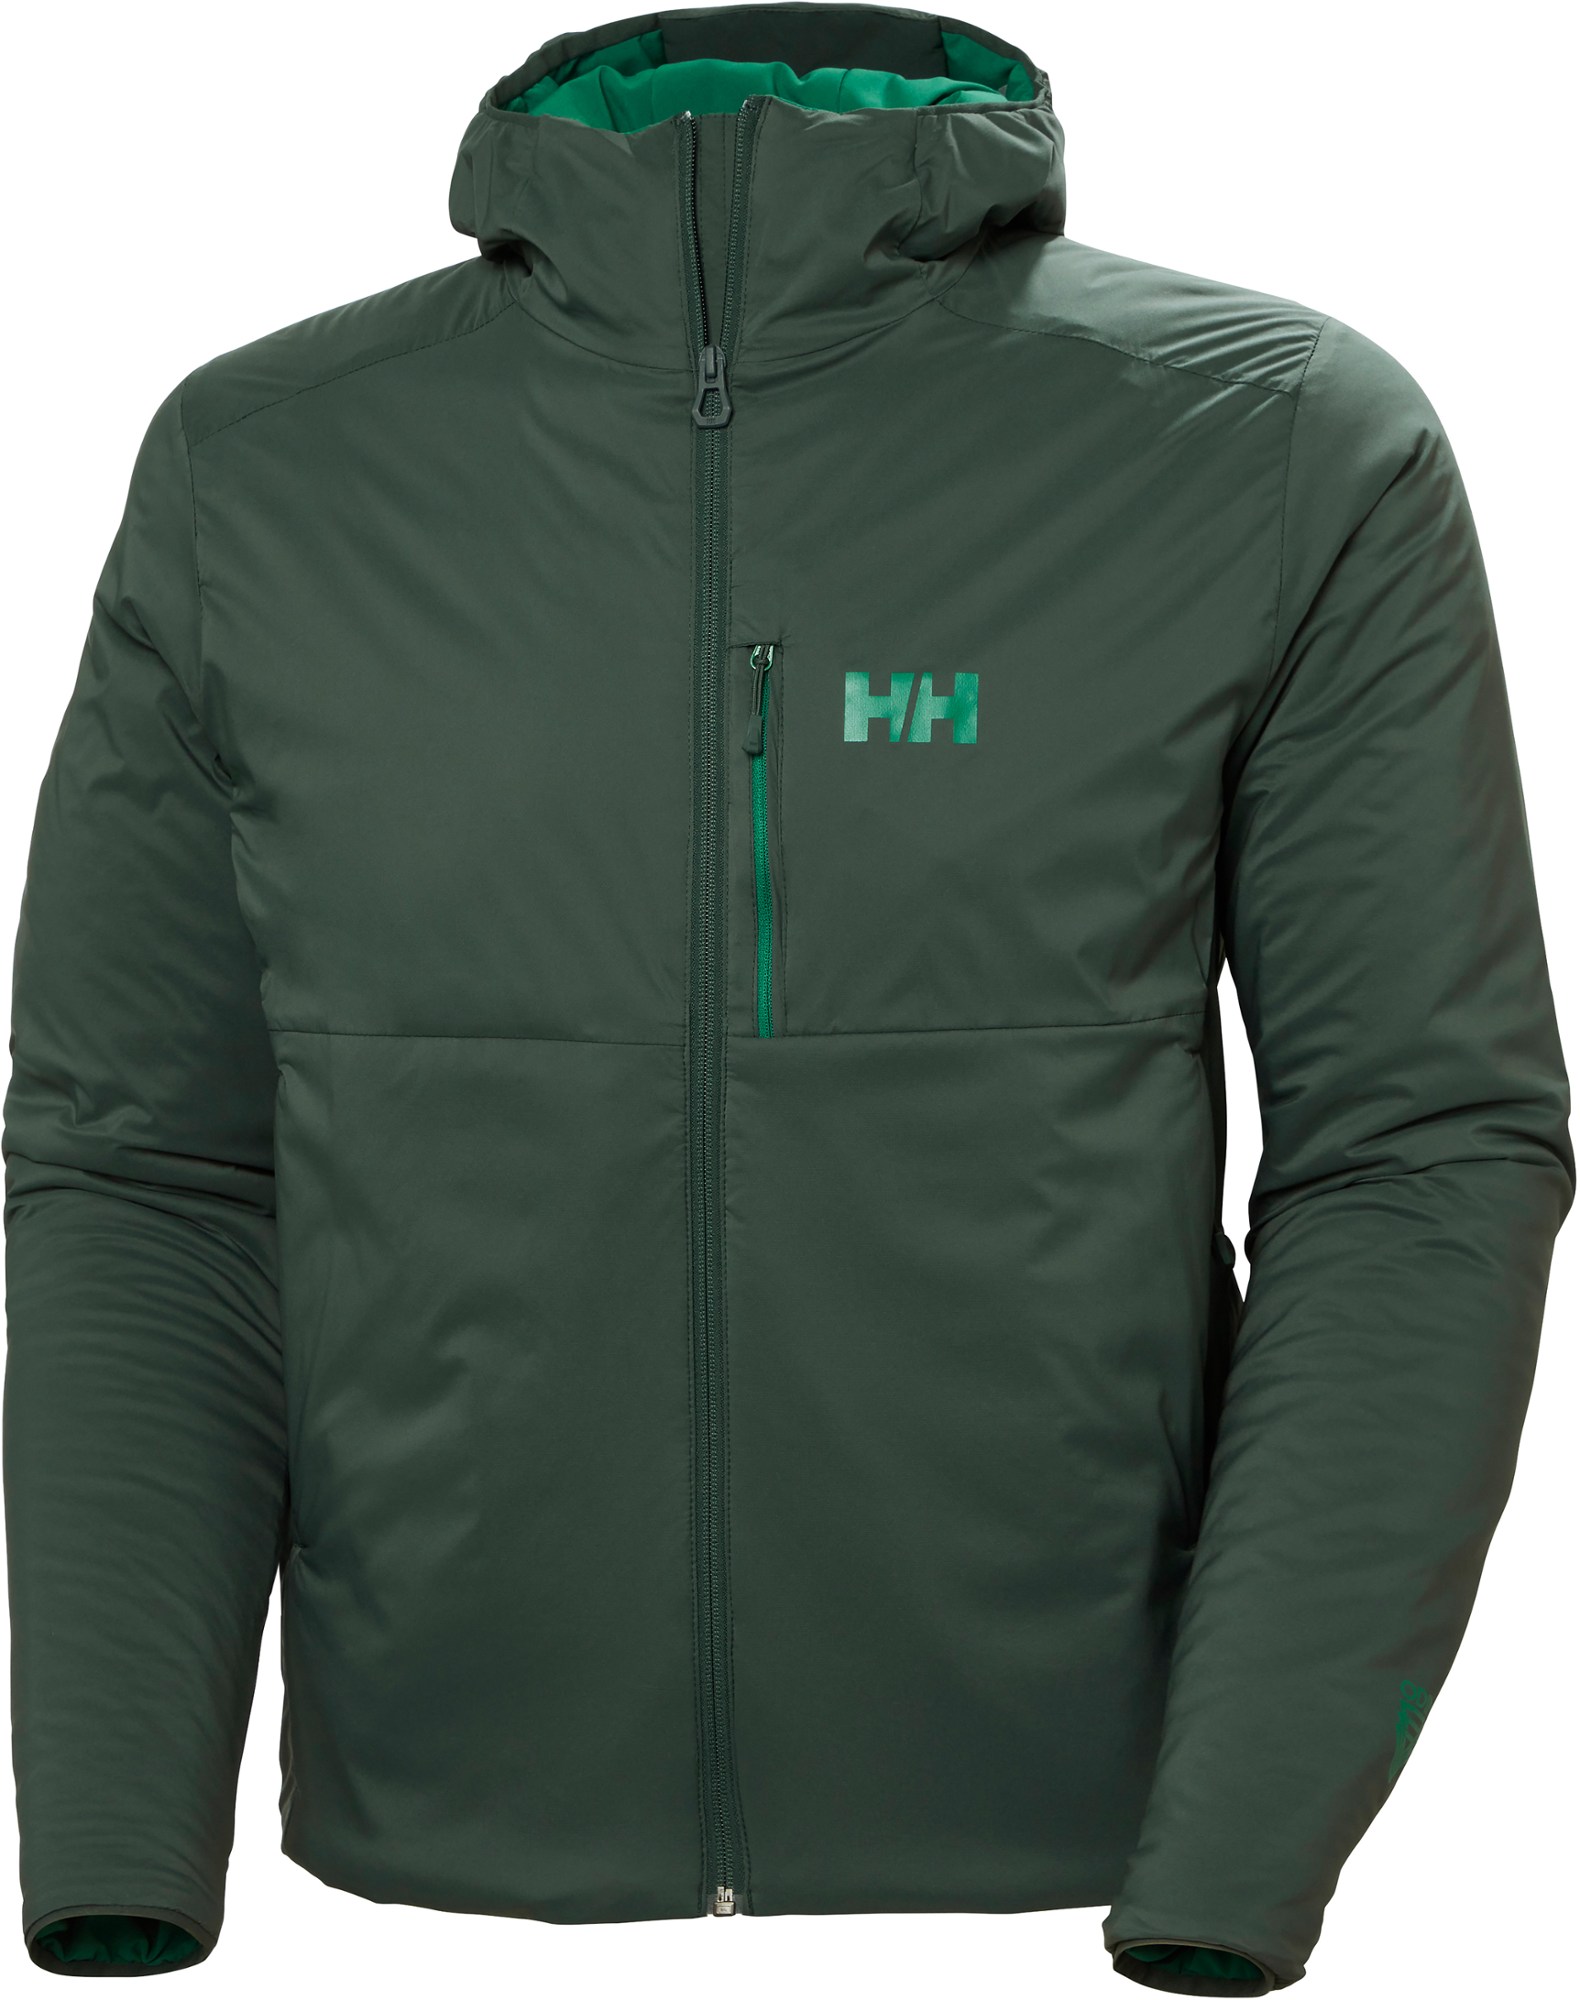 Утепленная куртка Odin Stretch Hooded - Мужская Helly Hansen, зеленый куртка active puffy мужская helly hansen цвет iced matcha